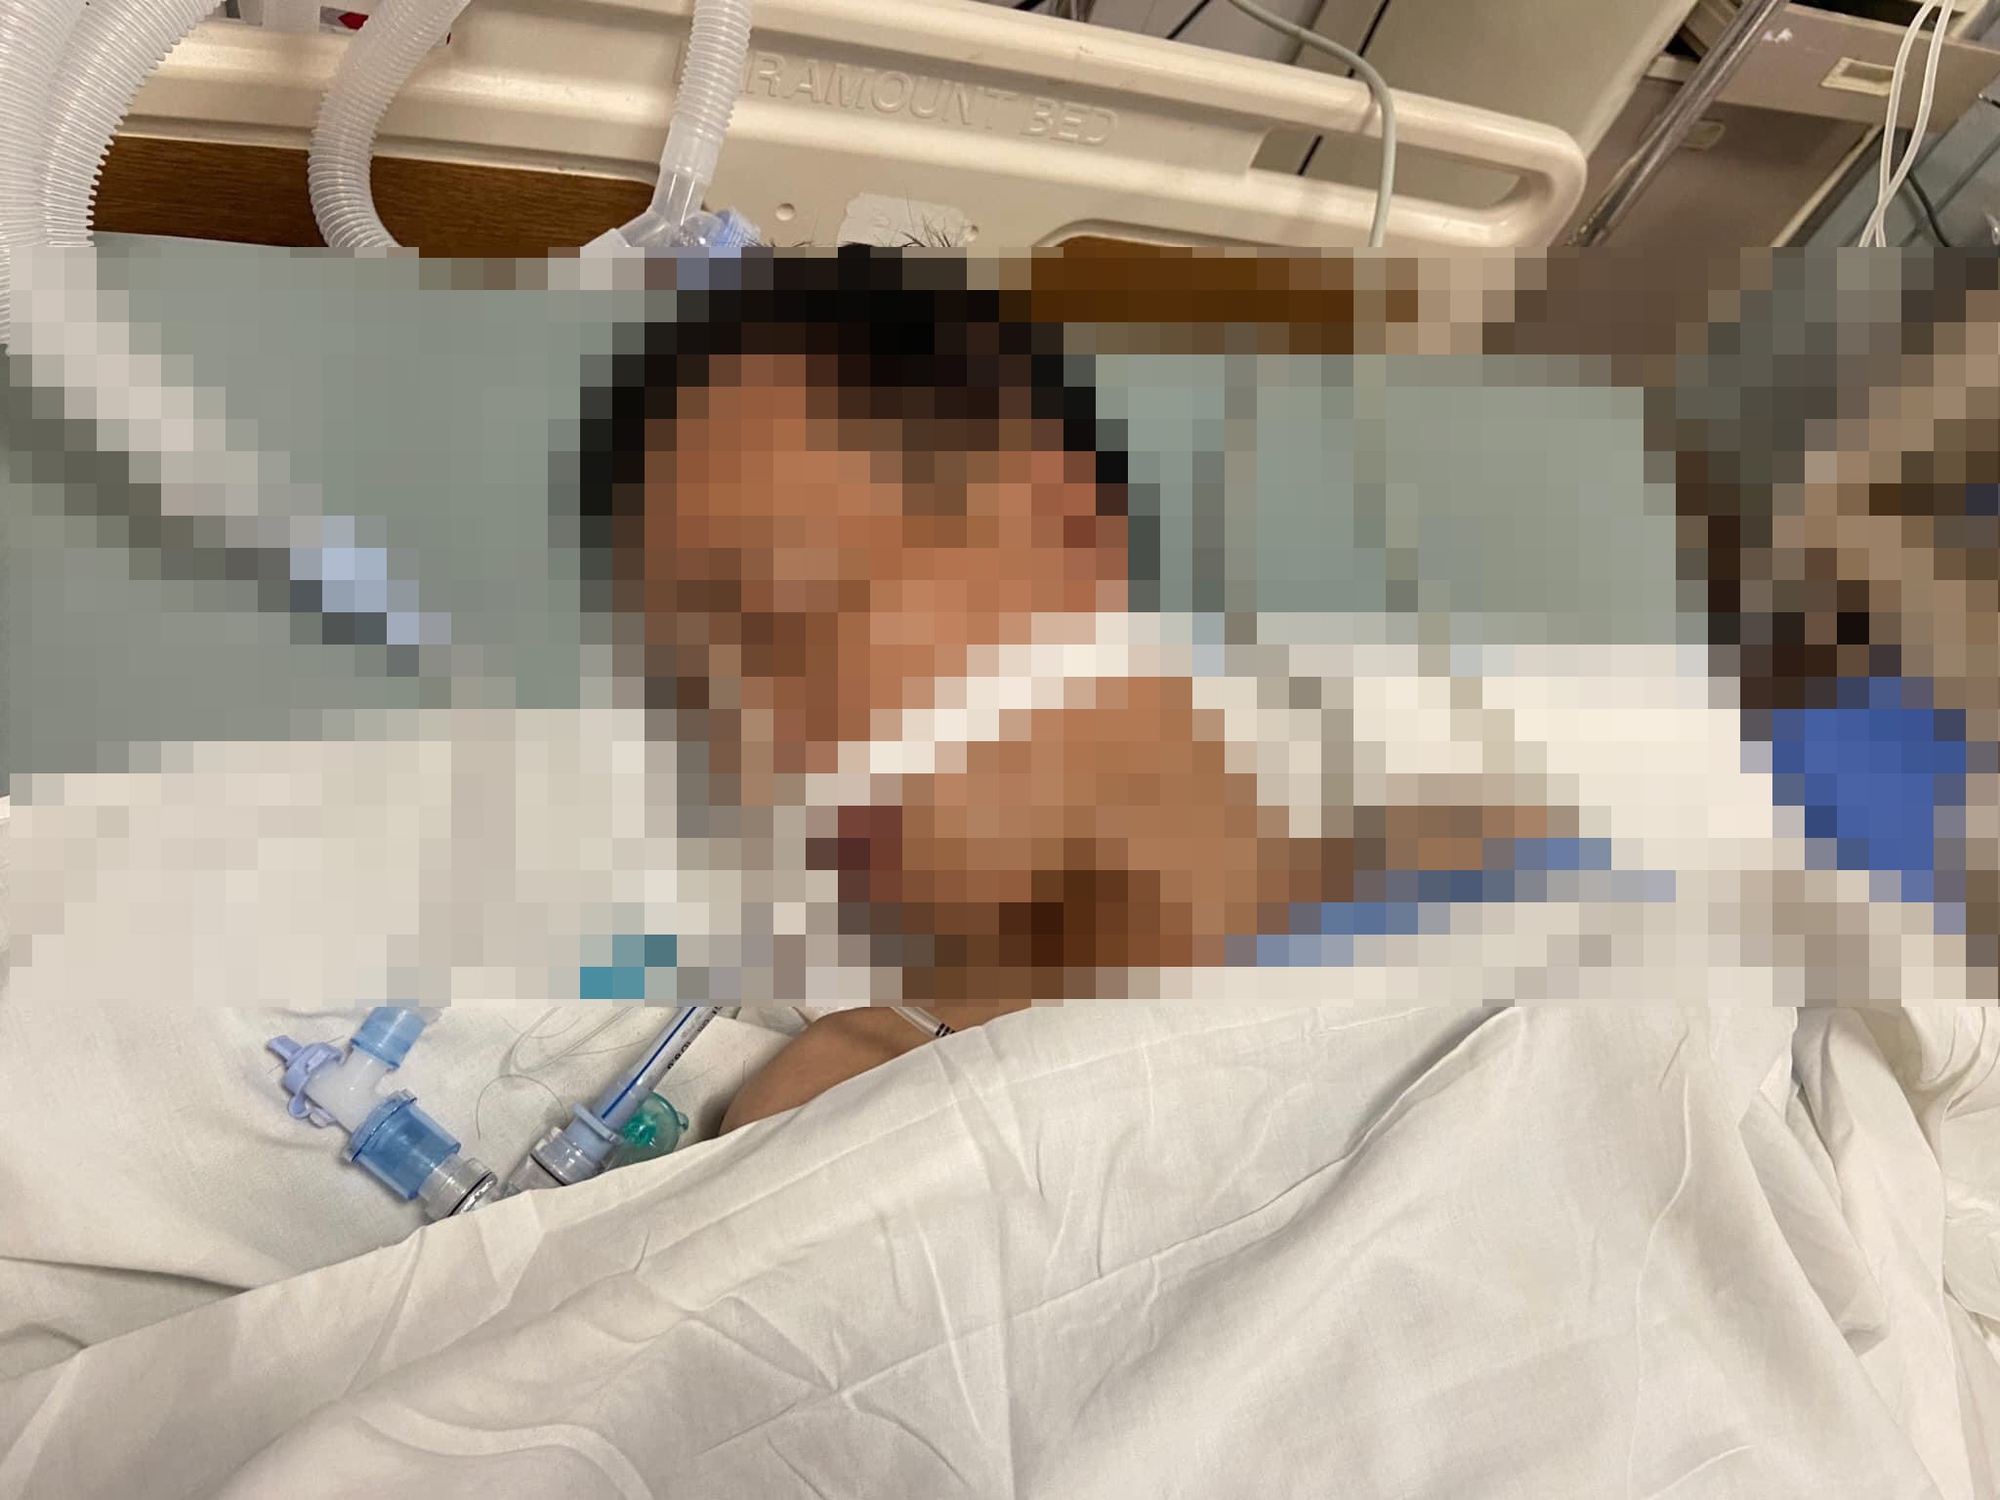 Hà Nội: Bệnh viện tìm người thân cho bệnh nhân vô danh vừa tử vong nghi do rượu - Ảnh 1.